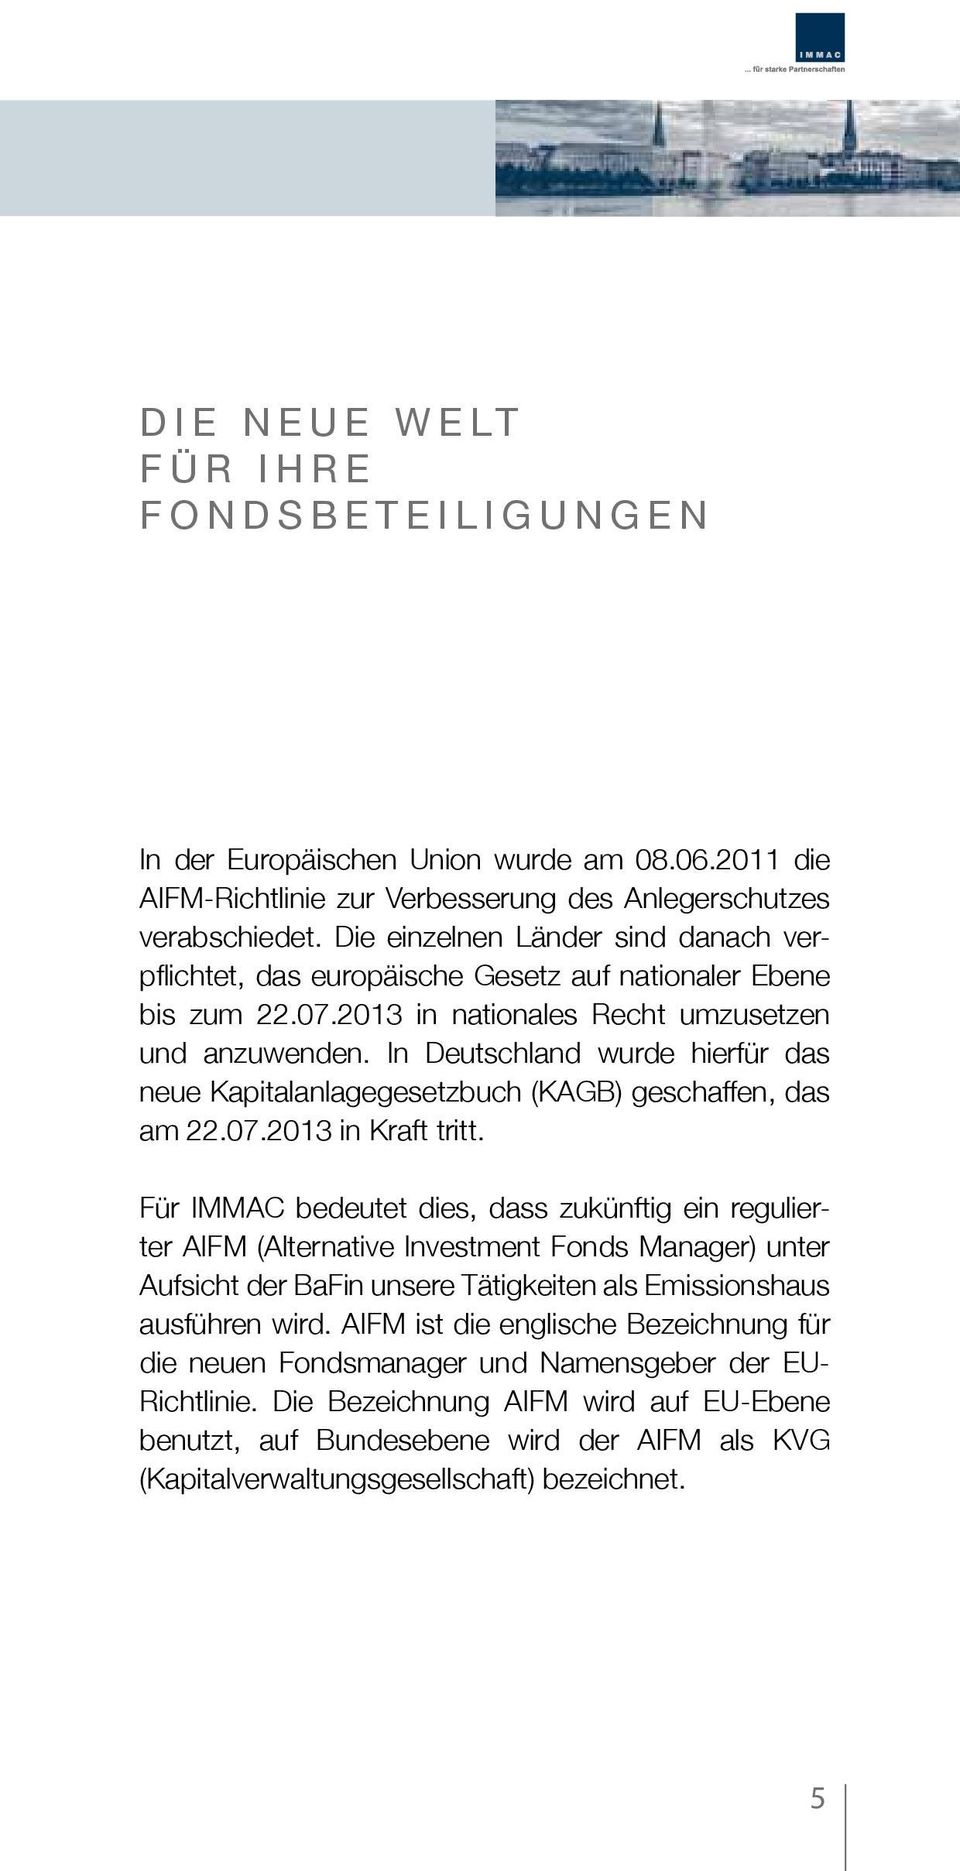 In Deutschland wurde hierfür das neue Kapitalanlagegesetzbuch (KAGB) geschaffen, das am 22.07.2013 in Kraft tritt.